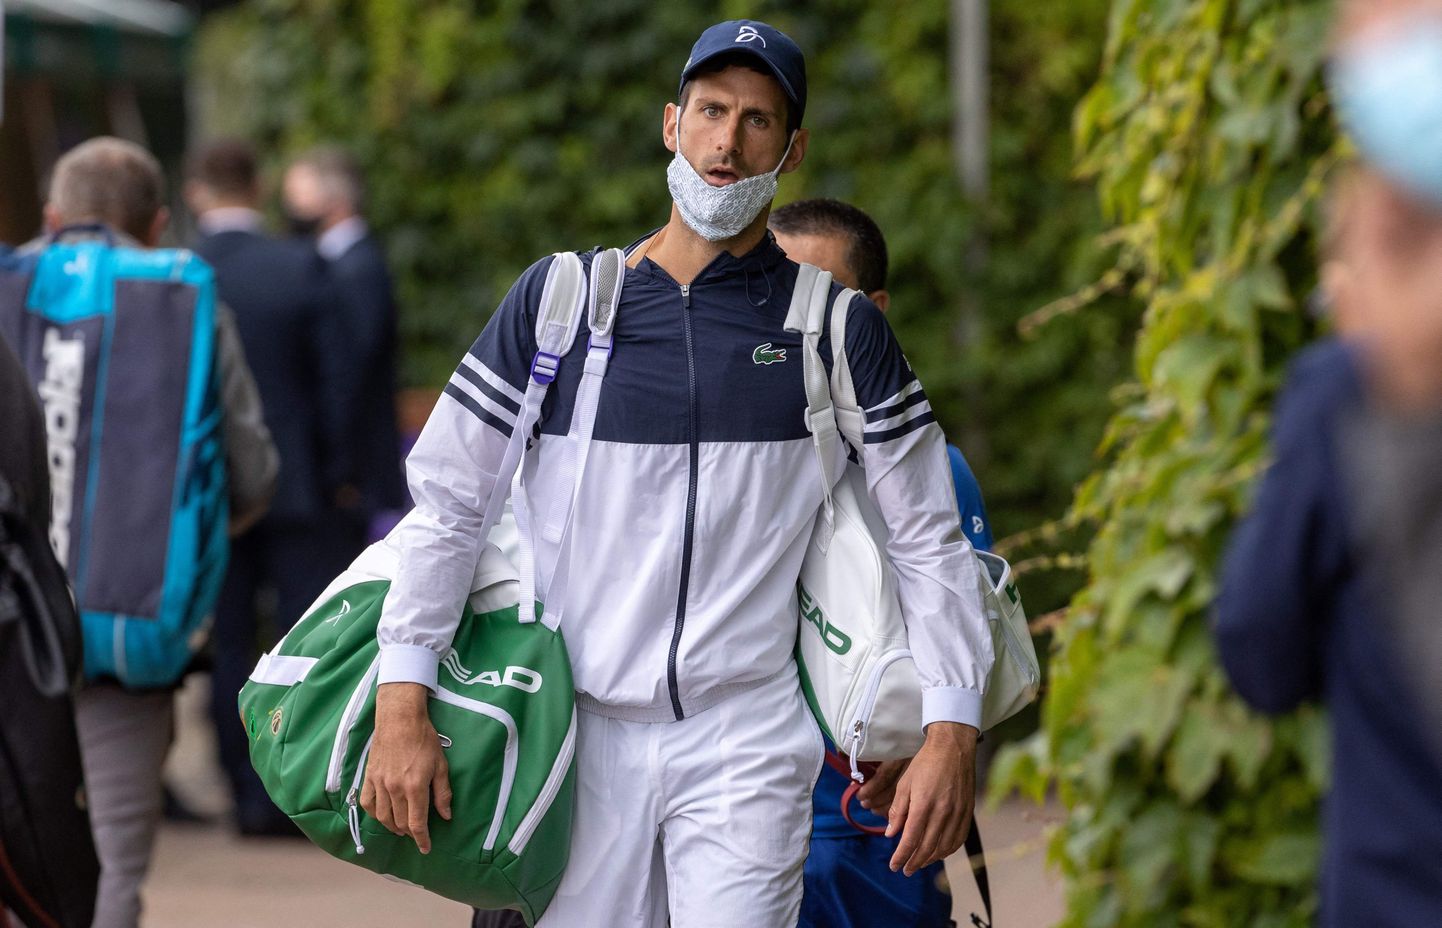 Kuigi Novak Djokovici kaitsele on tõusnud hulk vaktsineerimisvastaseid aktiviste, siis pole maailma esireket kunagi nende äärmuslikumaid seisukohti otsesõnu toetanud.